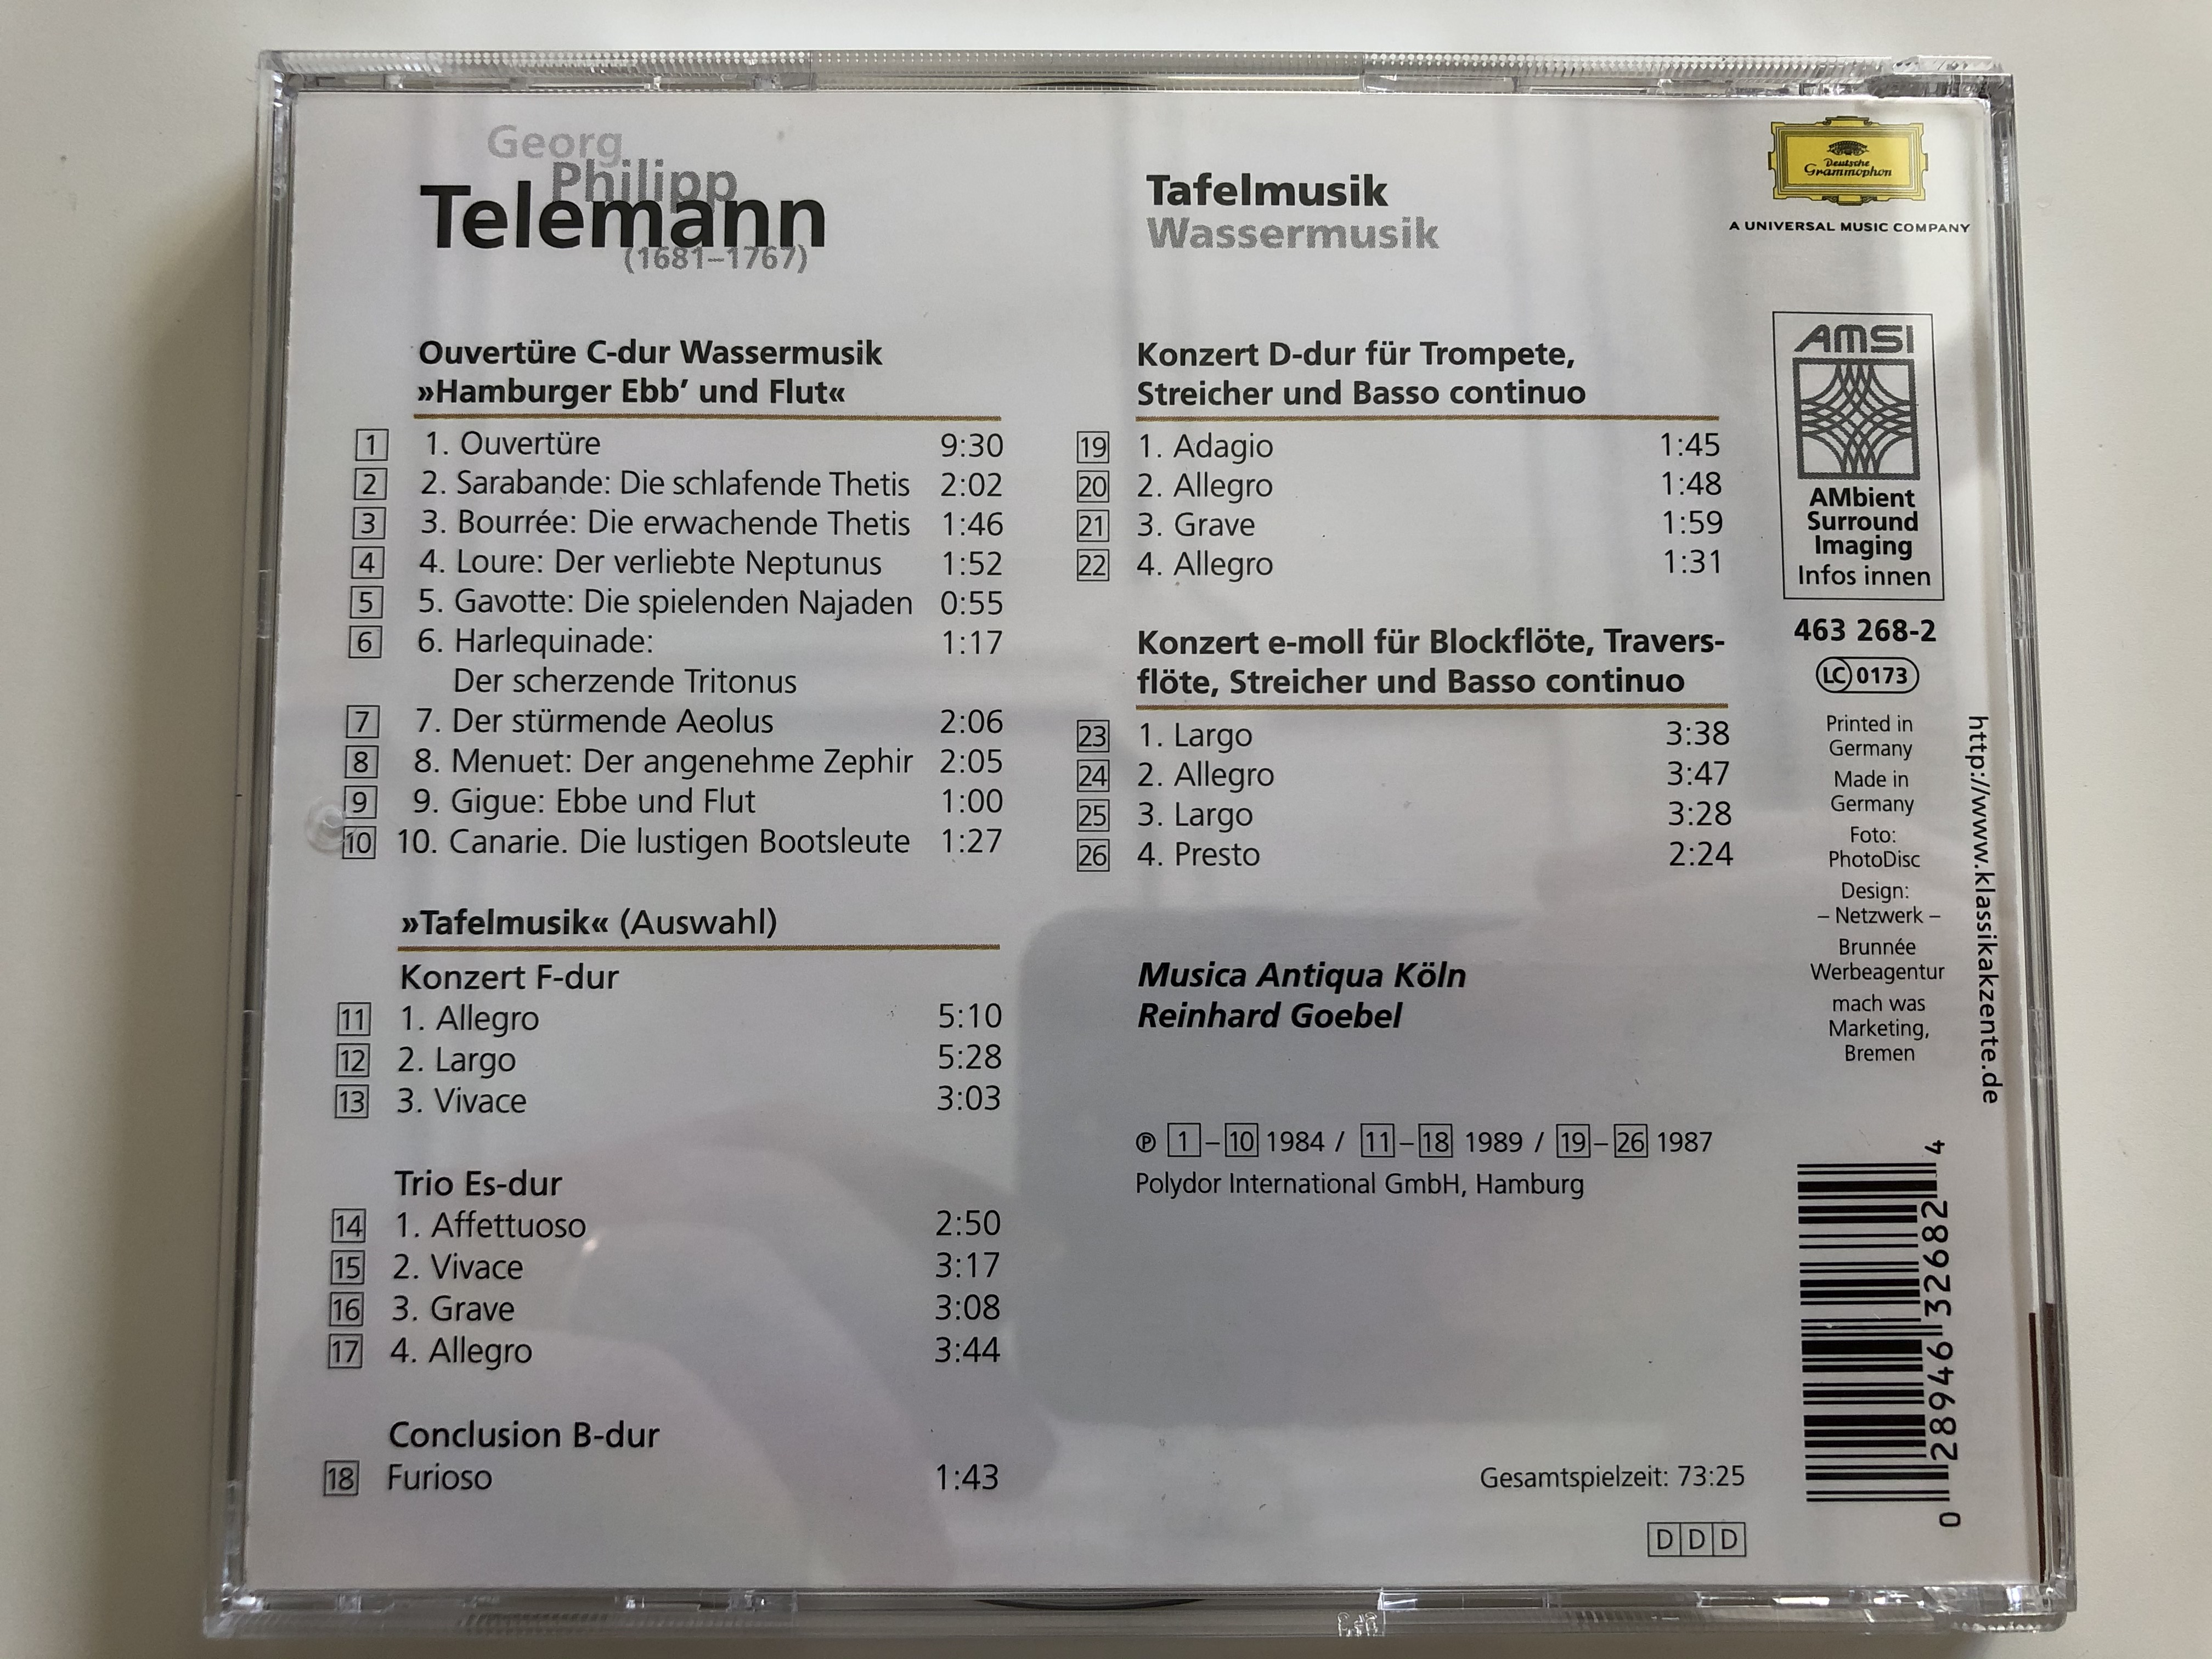 georg-philipp-telemann-tafelmusik-wassermusik-musica-antiqua-k-ln-reinhard-goebel-deutsche-grammophon-audio-cd-463-268-2-4-.jpg